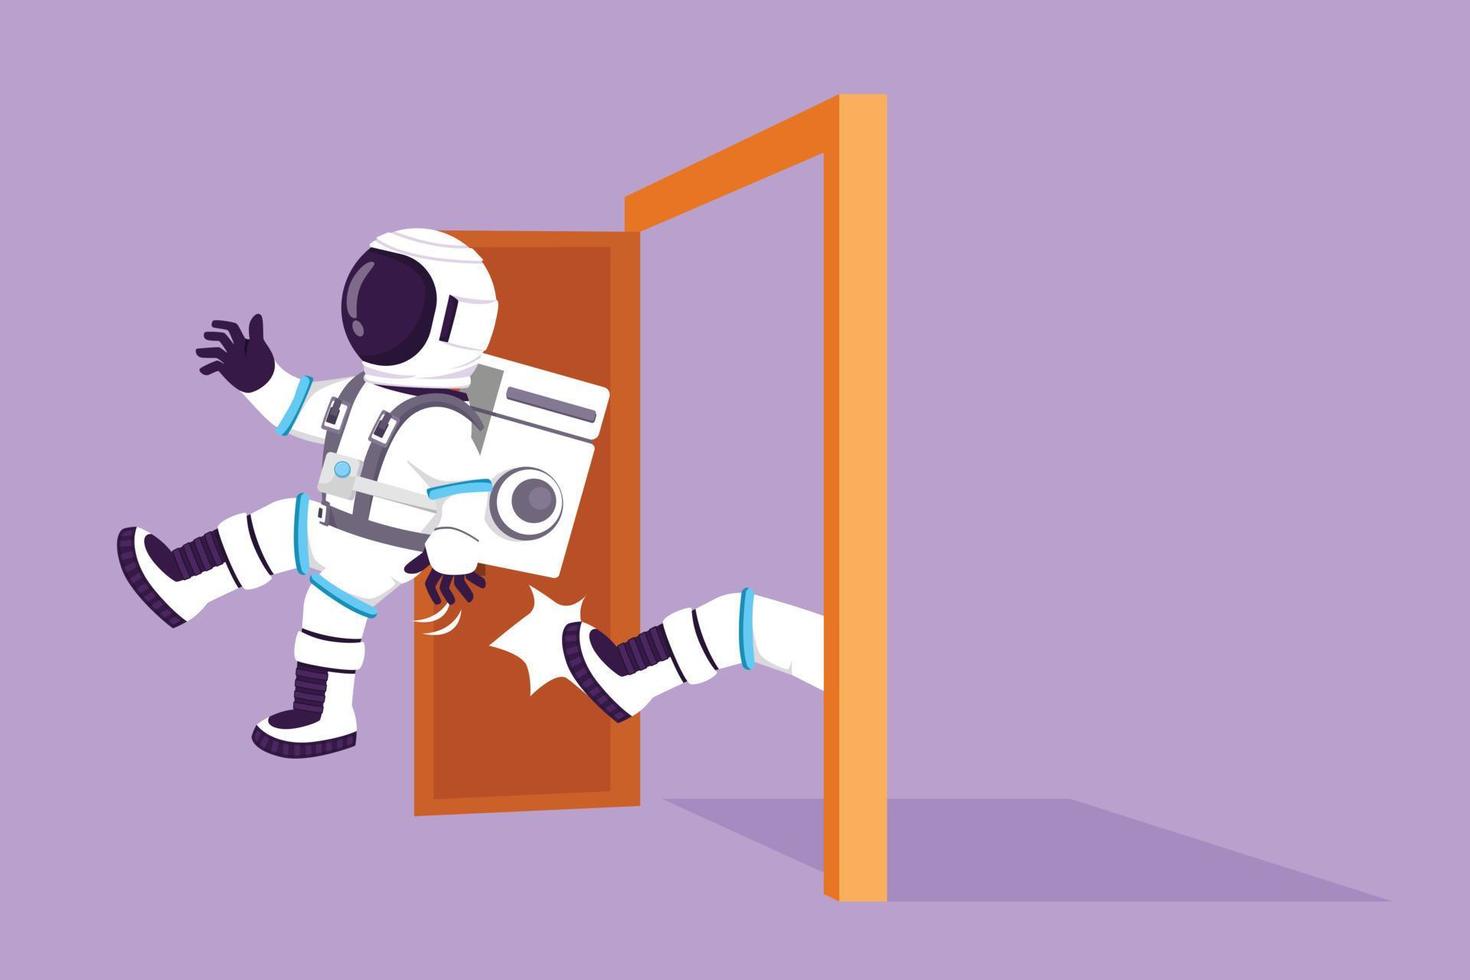 Cartoon Flat Style Zeichnung junger Astronaut wird auf der Mondoberfläche aus der Tür geworfen. von der Arbeit entlassen. Chef tritt unnötigen Mitarbeiter. kosmisches galaxienraumkonzept. Grafikdesign-Vektorillustration vektor